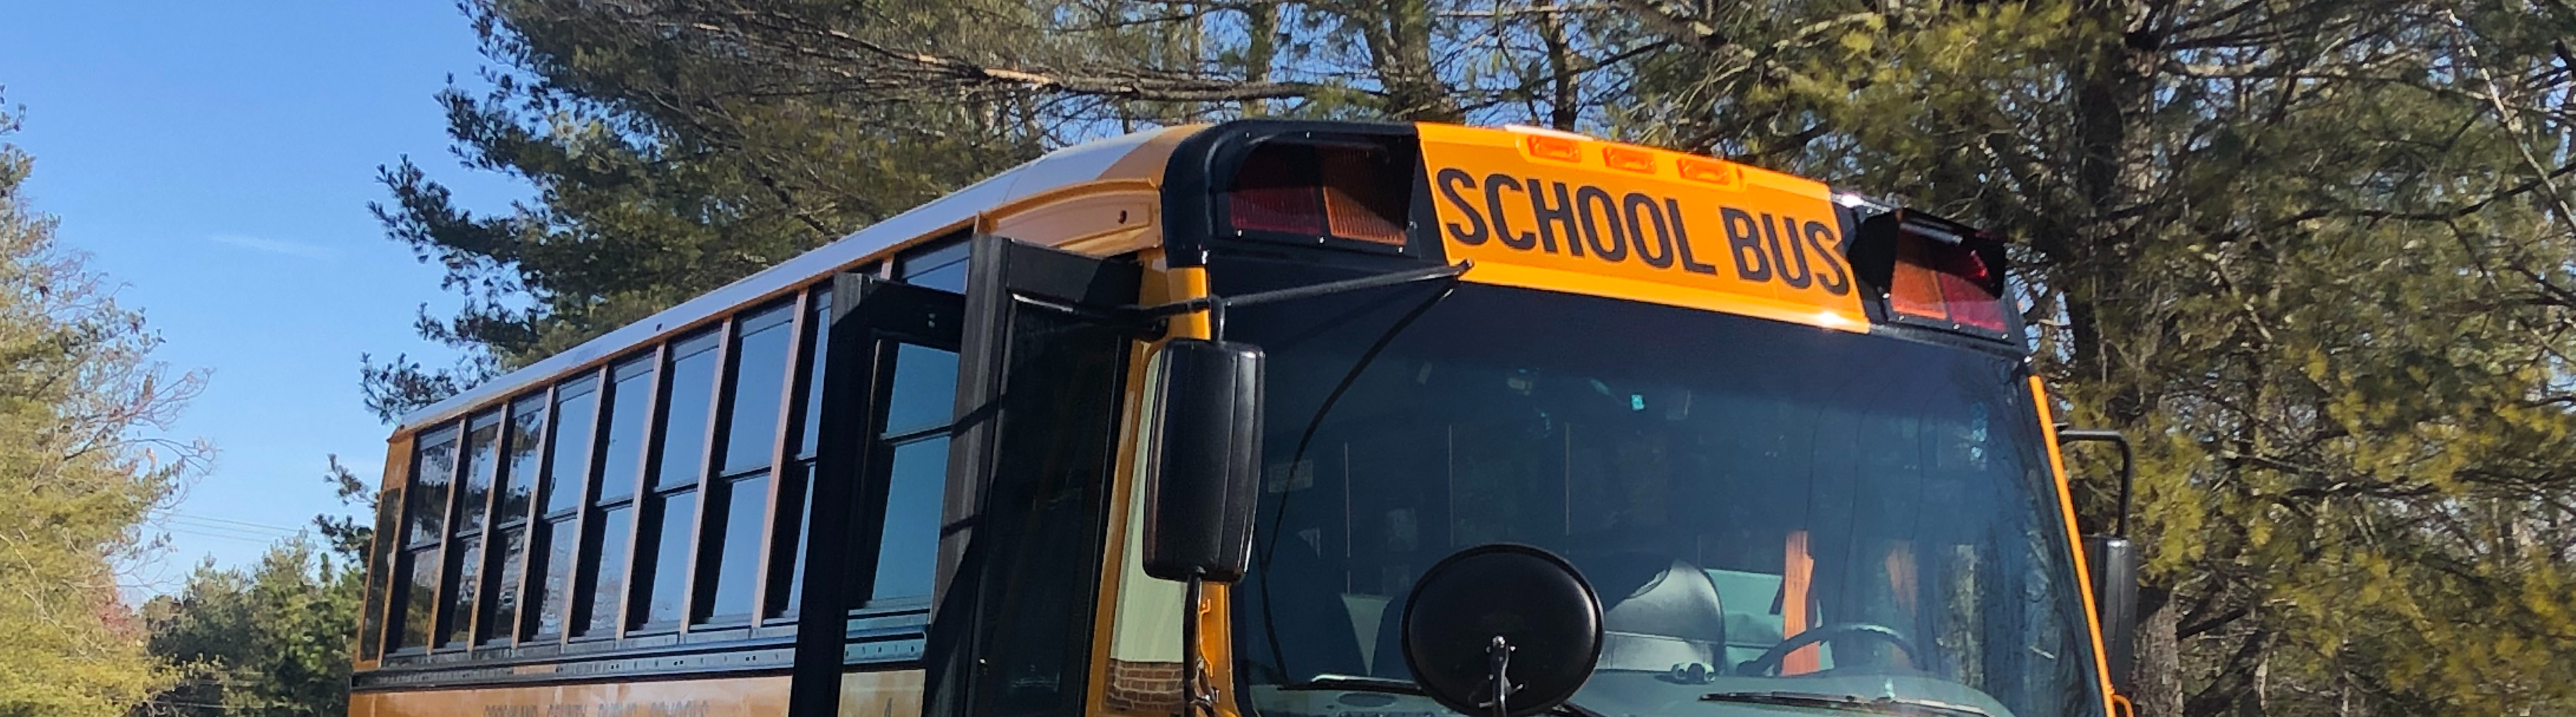 GCPS School bus